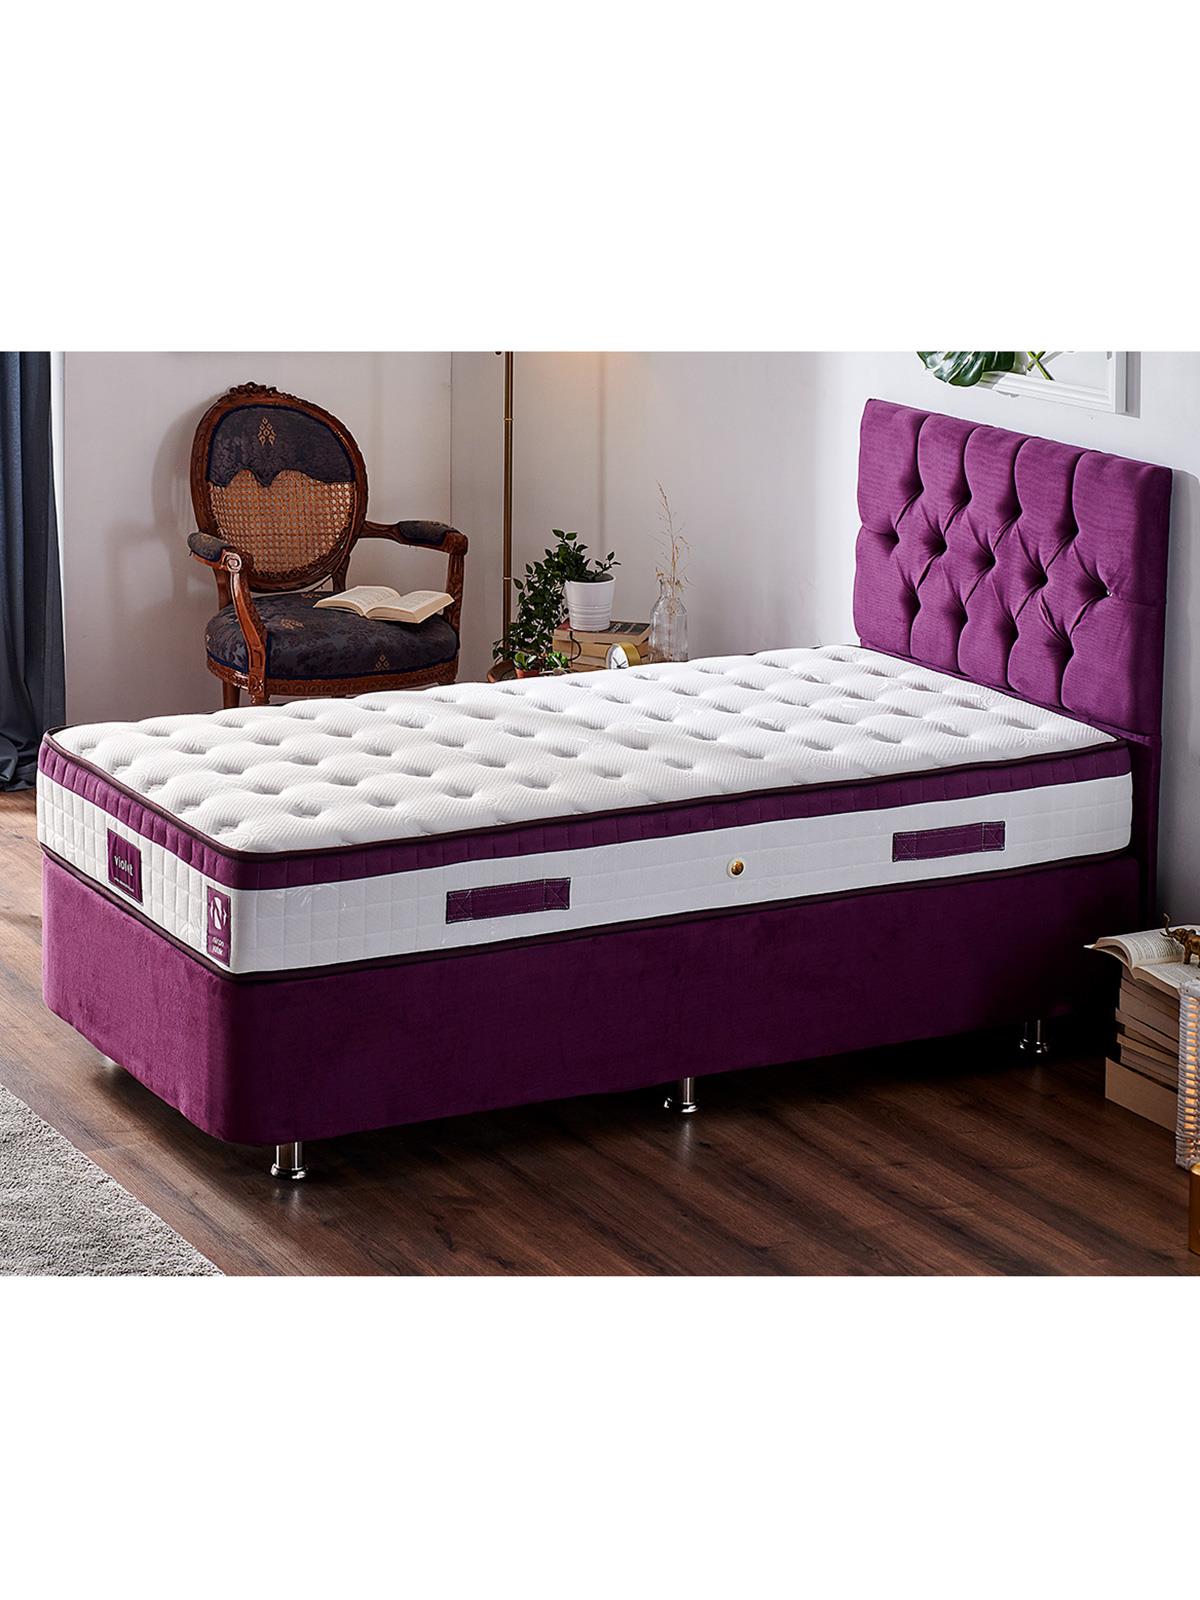 Niron Violet Yatak Seti 120x200 cm Tek Kişilik Yatak Baza Başlık Takımı Orta Sert Yatak Baza ve Başlığı Mor